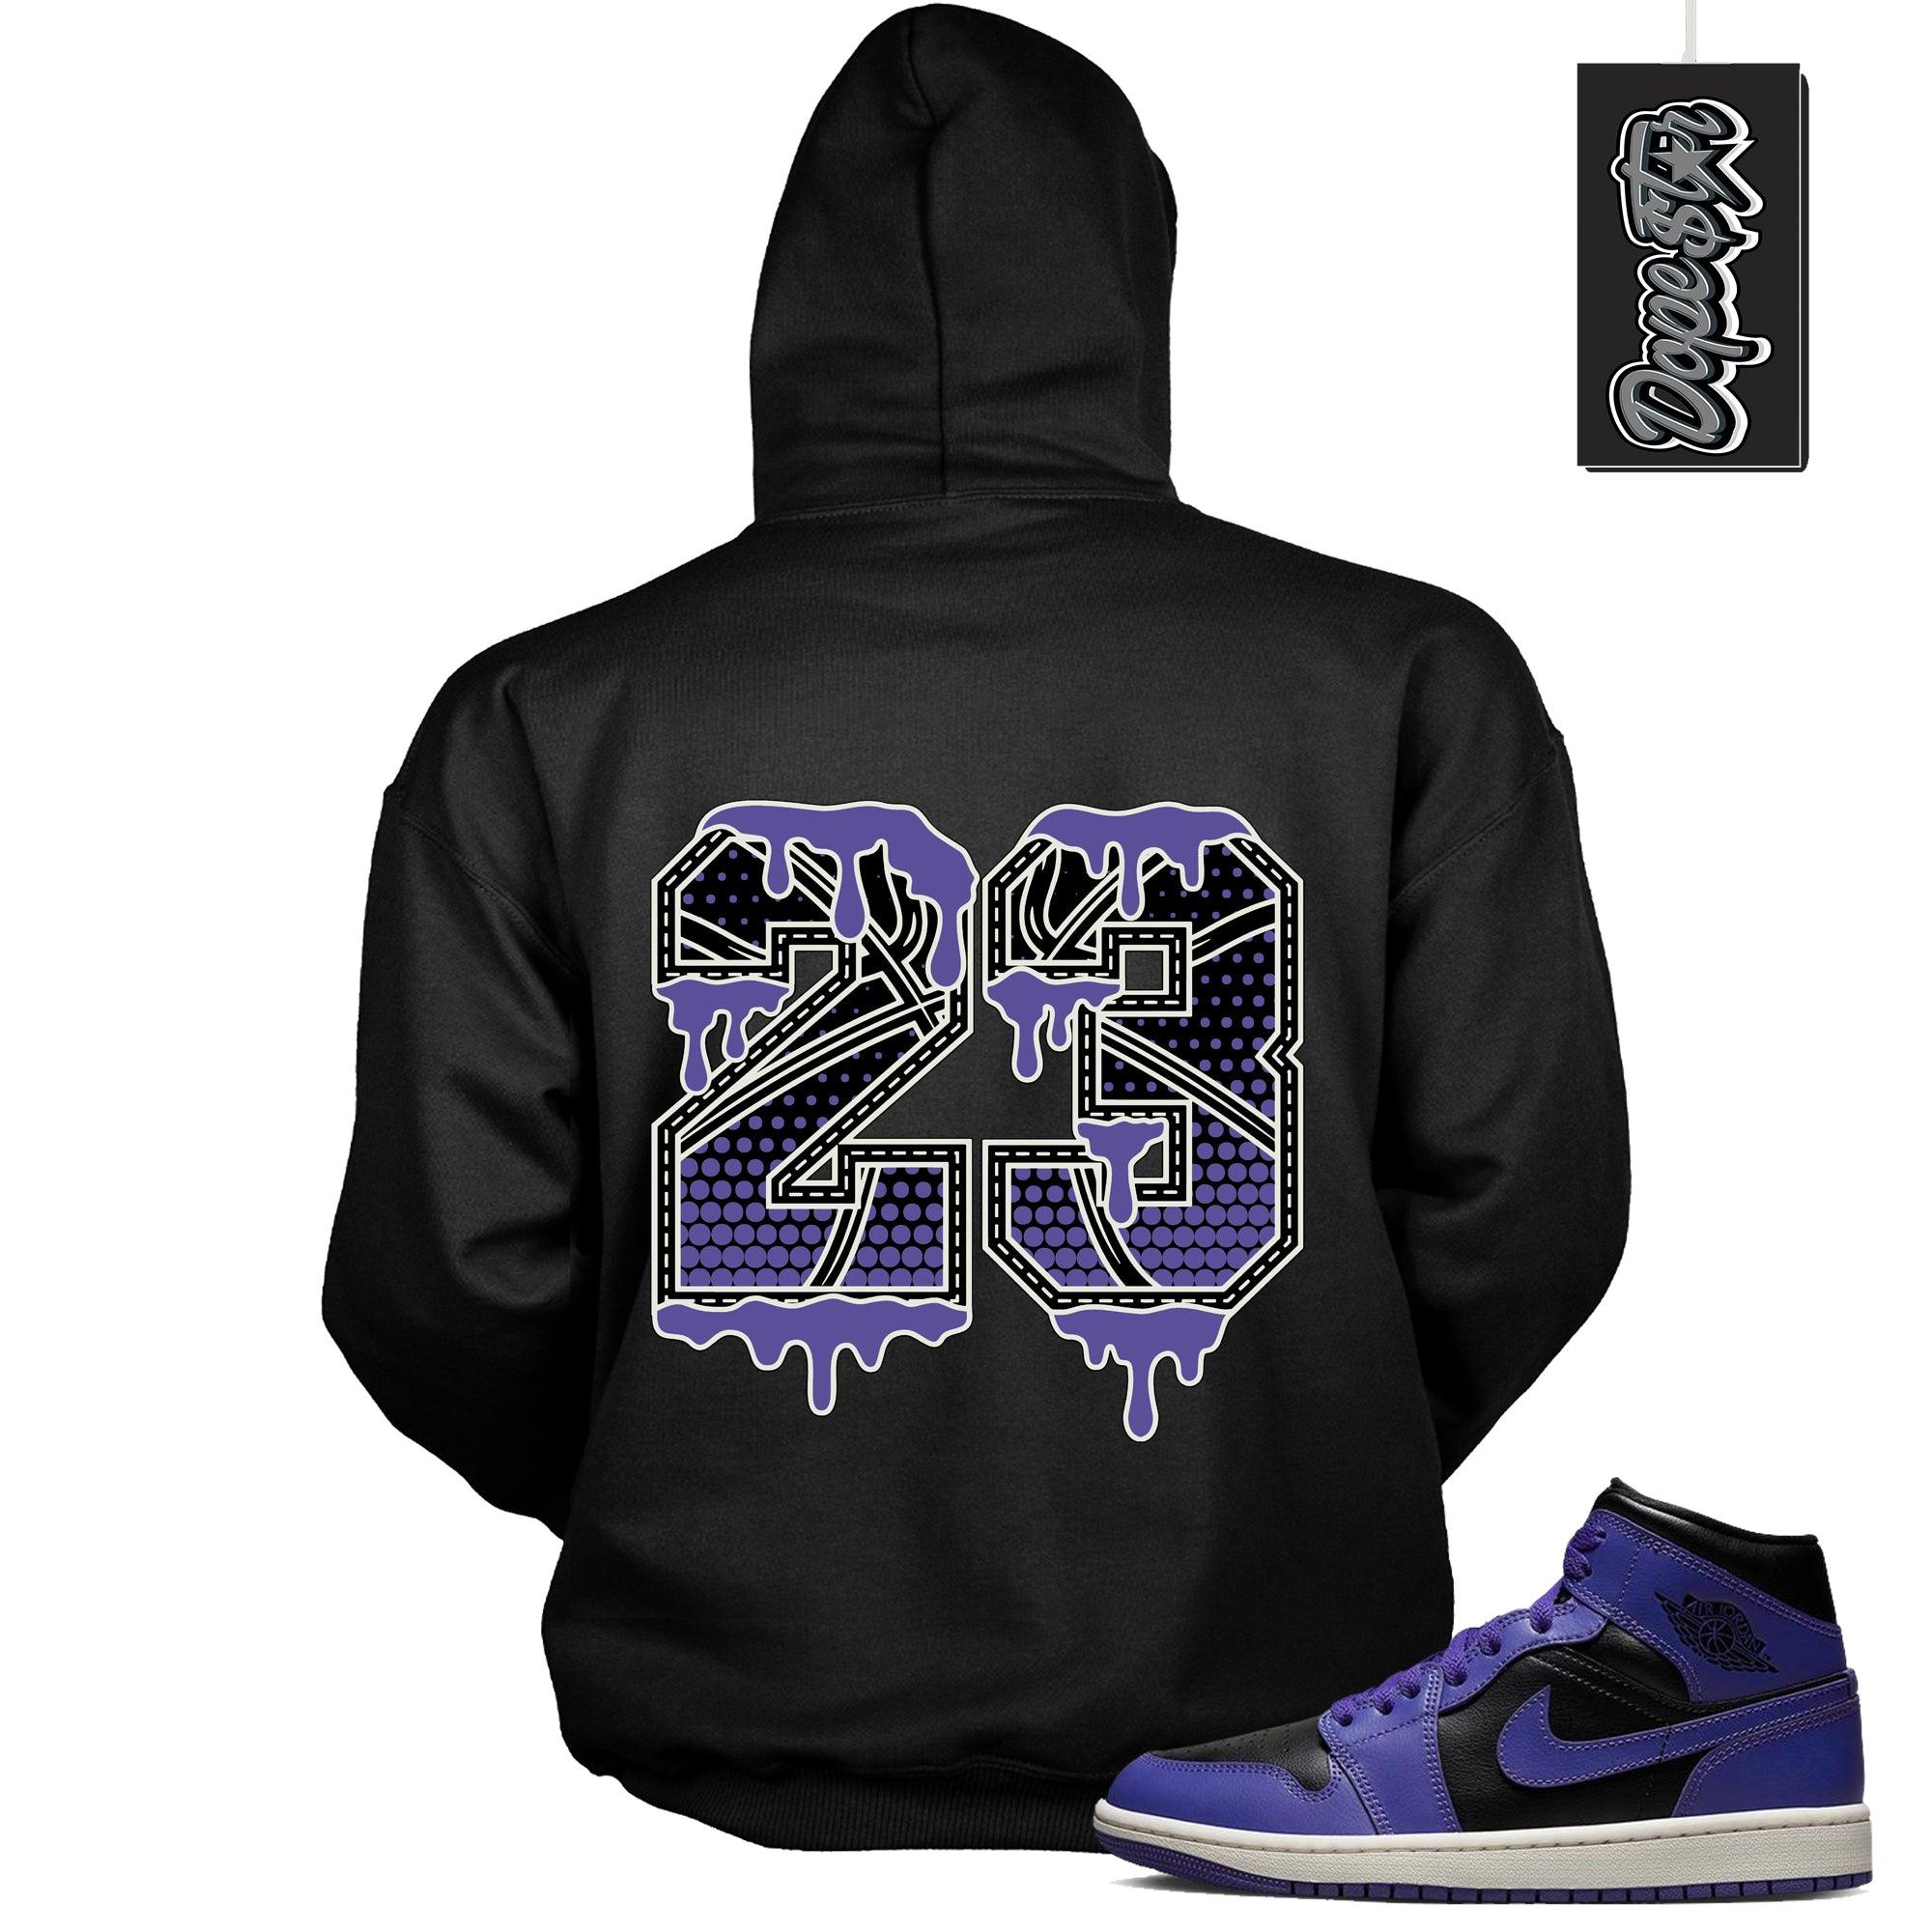 Number 23 Ball Jordan 1 Hoodies Mid Purple Black photo